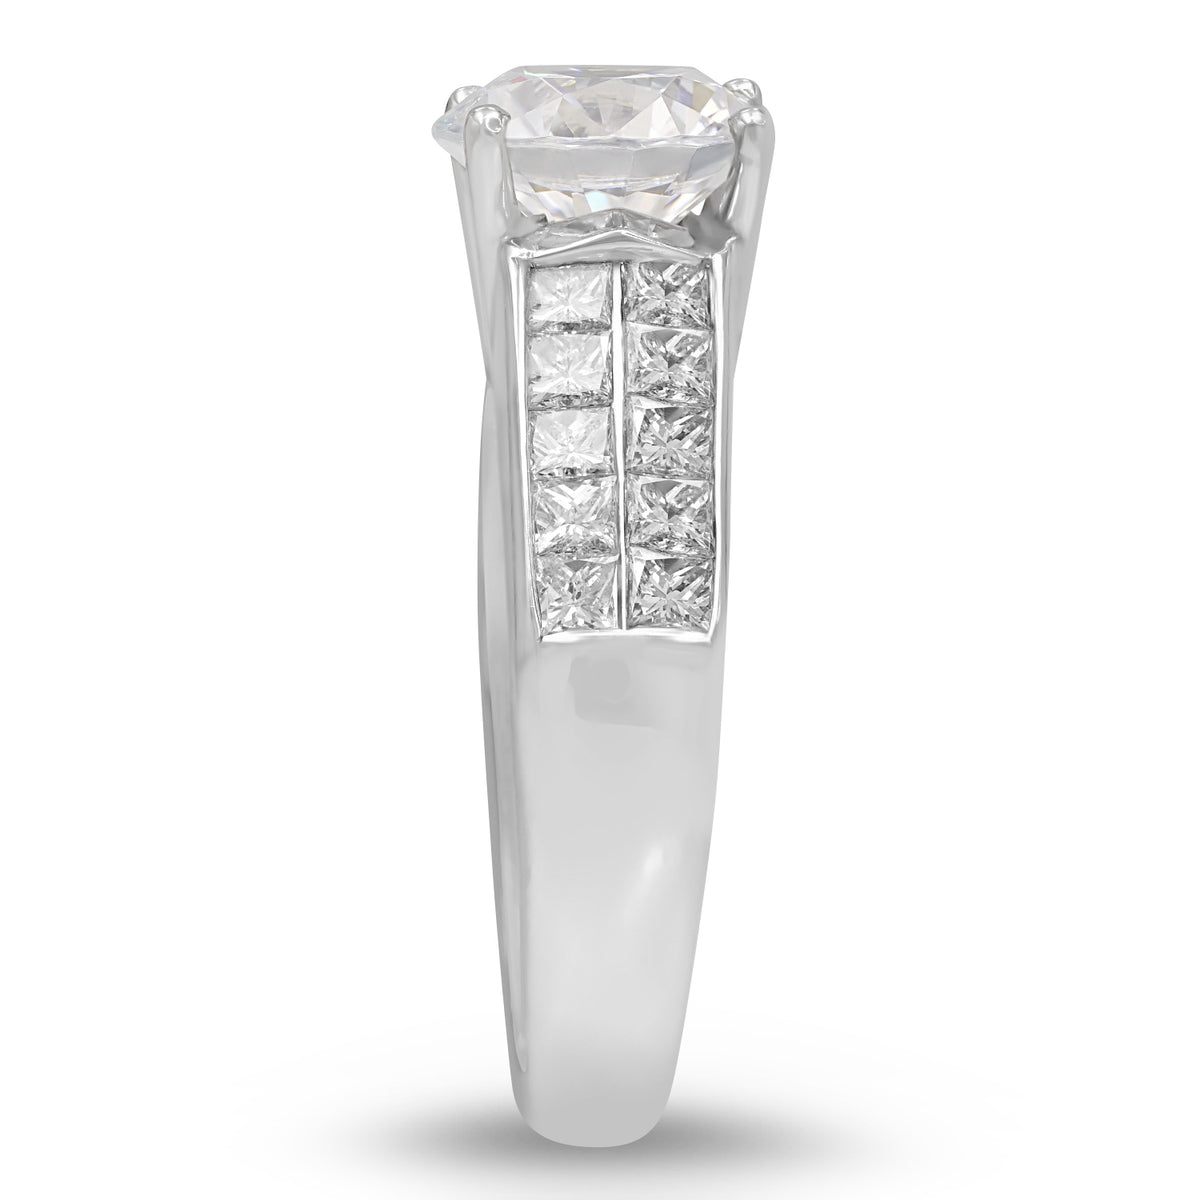 Platinum Diamond Semi-mount Ring